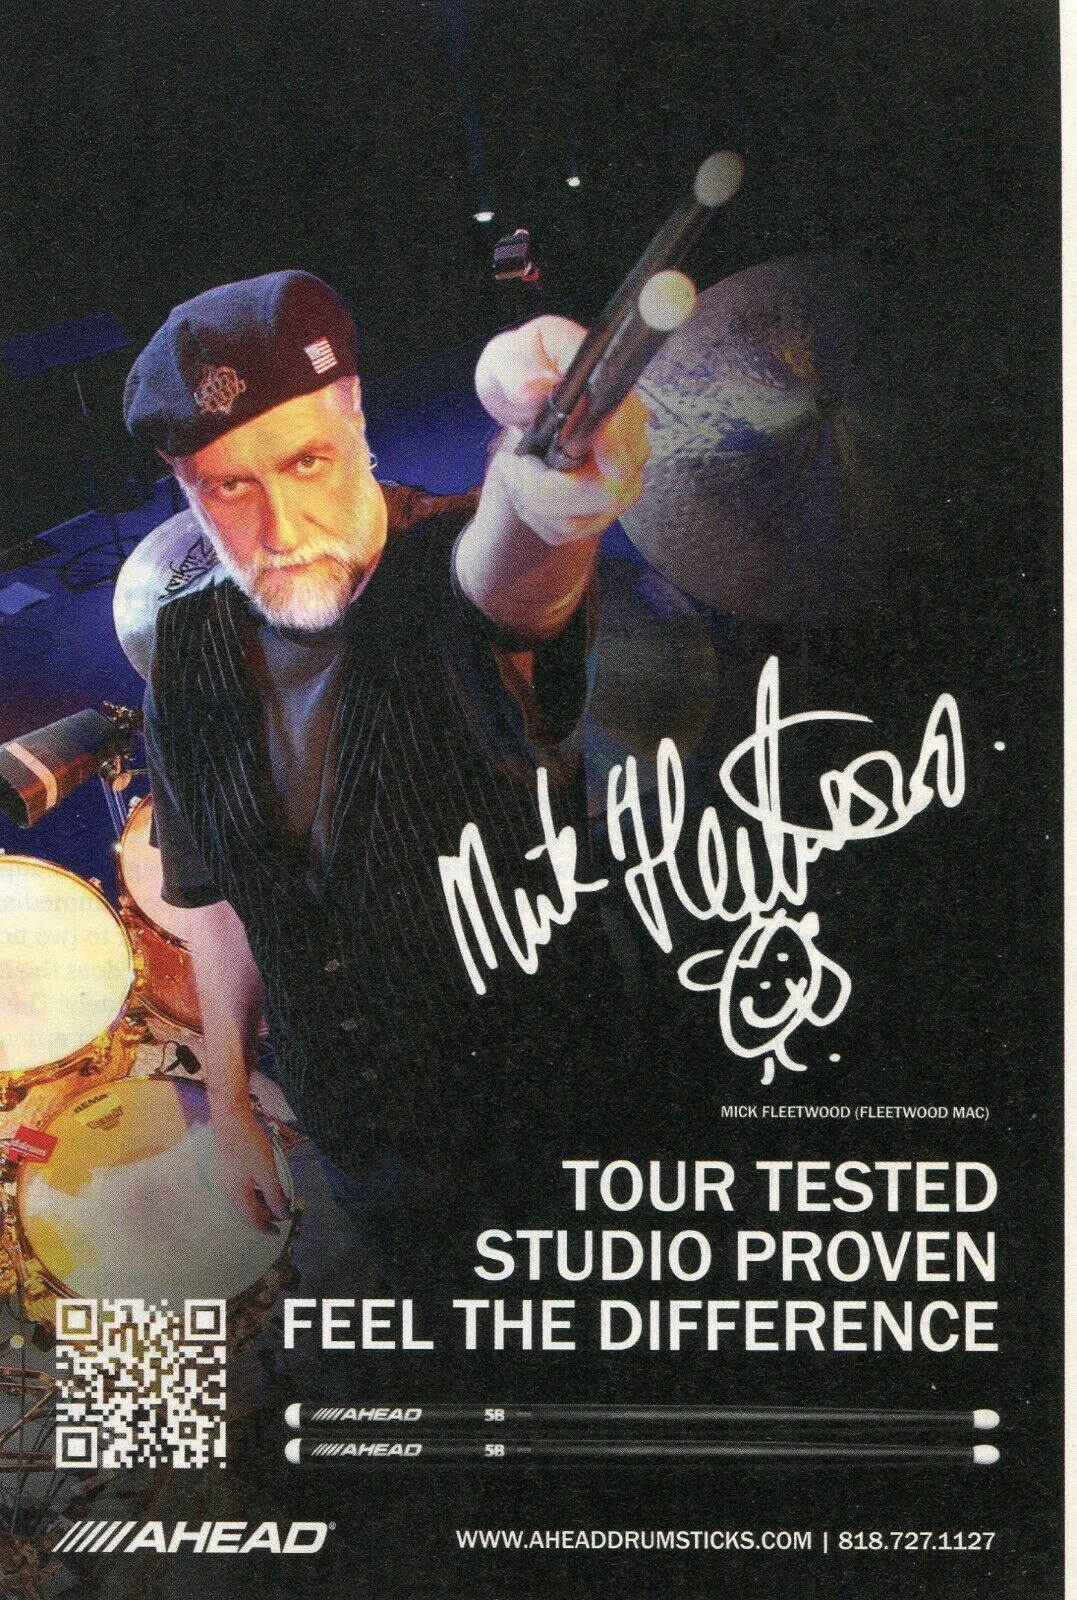 2015 small Print Ad of Ahead Drumsticks w Mick Fleetwood Mac